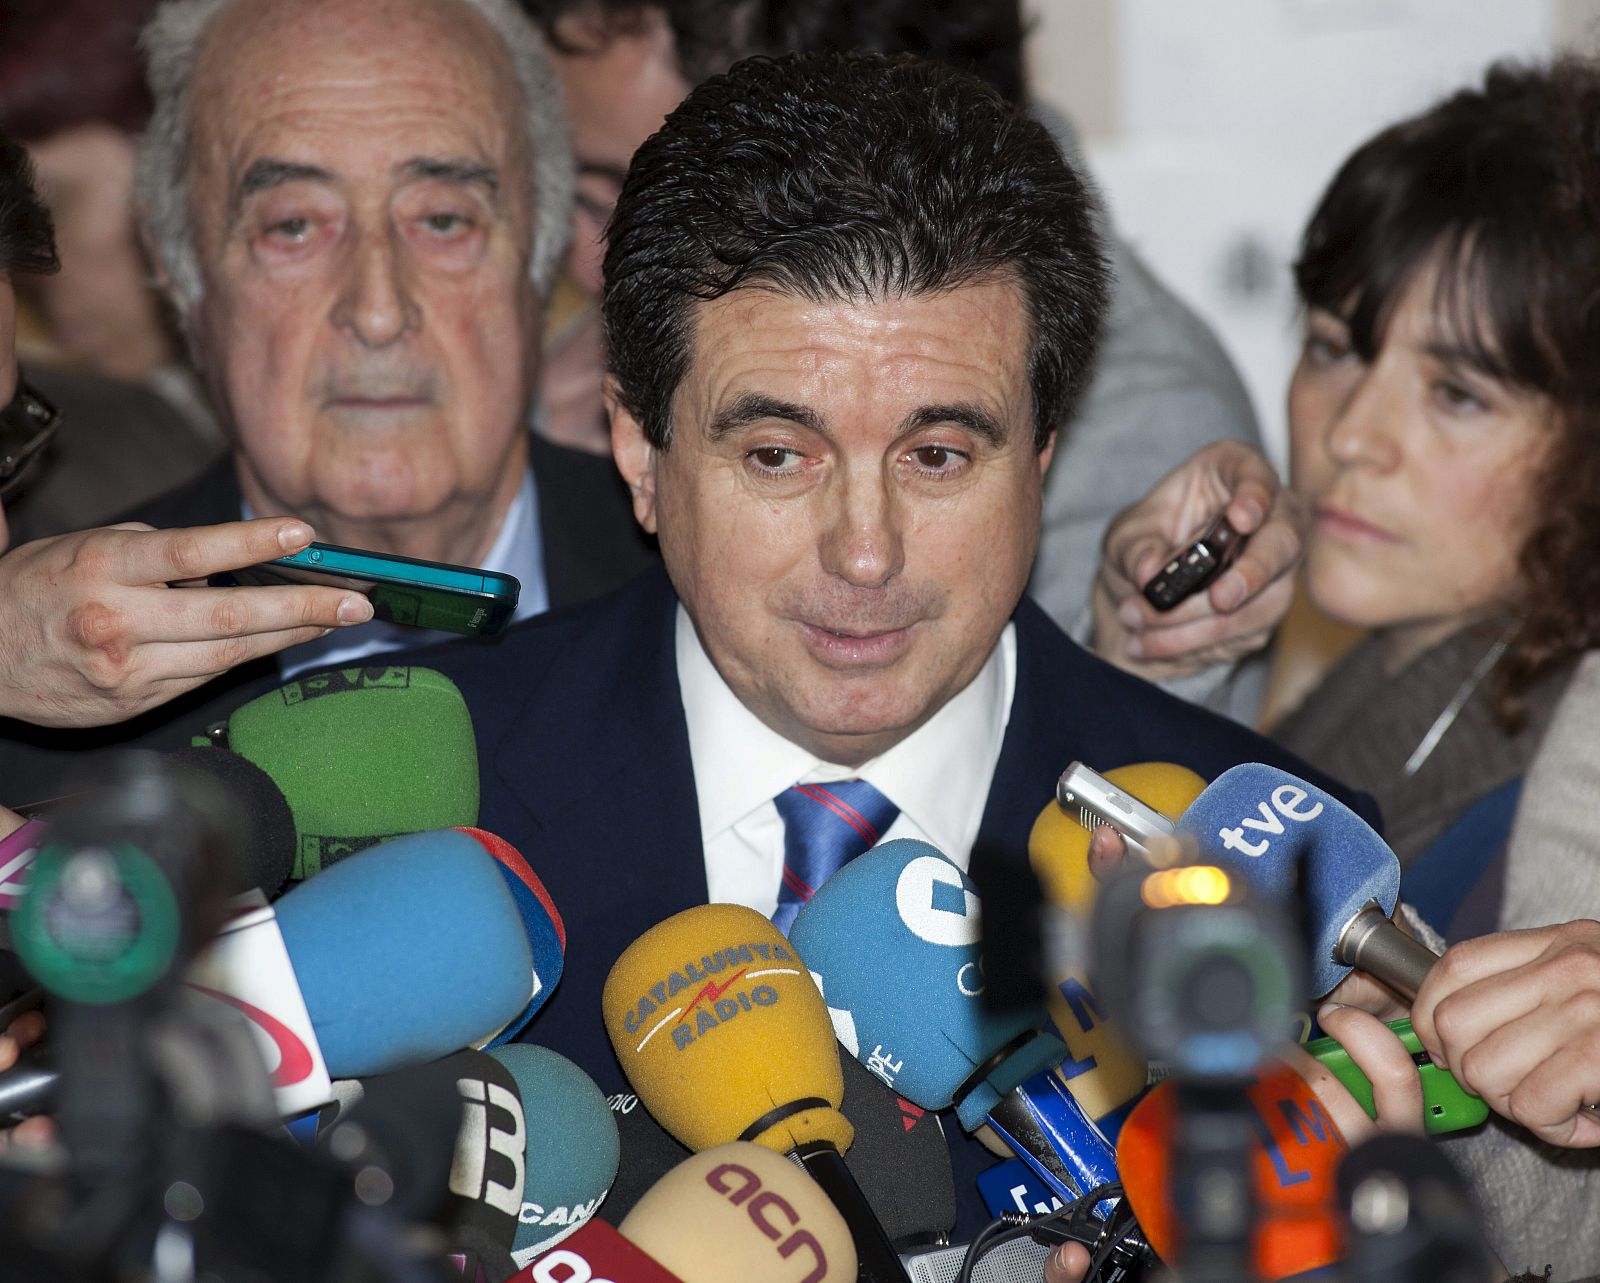 El expresidente balear Jaume Matas a su salida de los juzgados tras declarar por el proyecto de la ópera de Calatrava